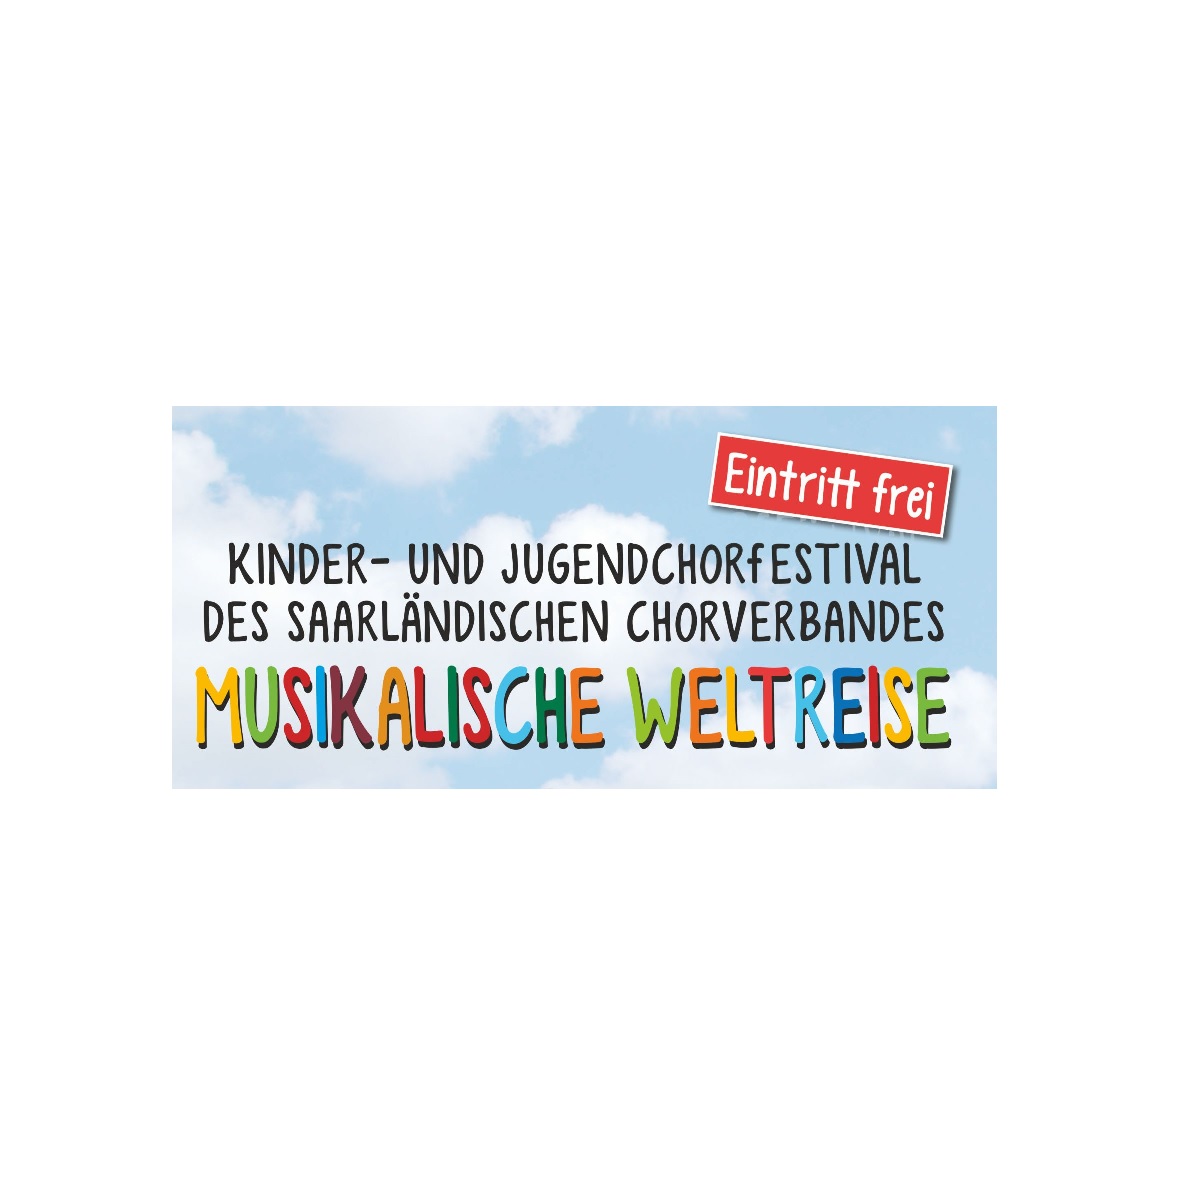 Featured image for “3. Saarländisches Kinder- und Jugendchorfestival”